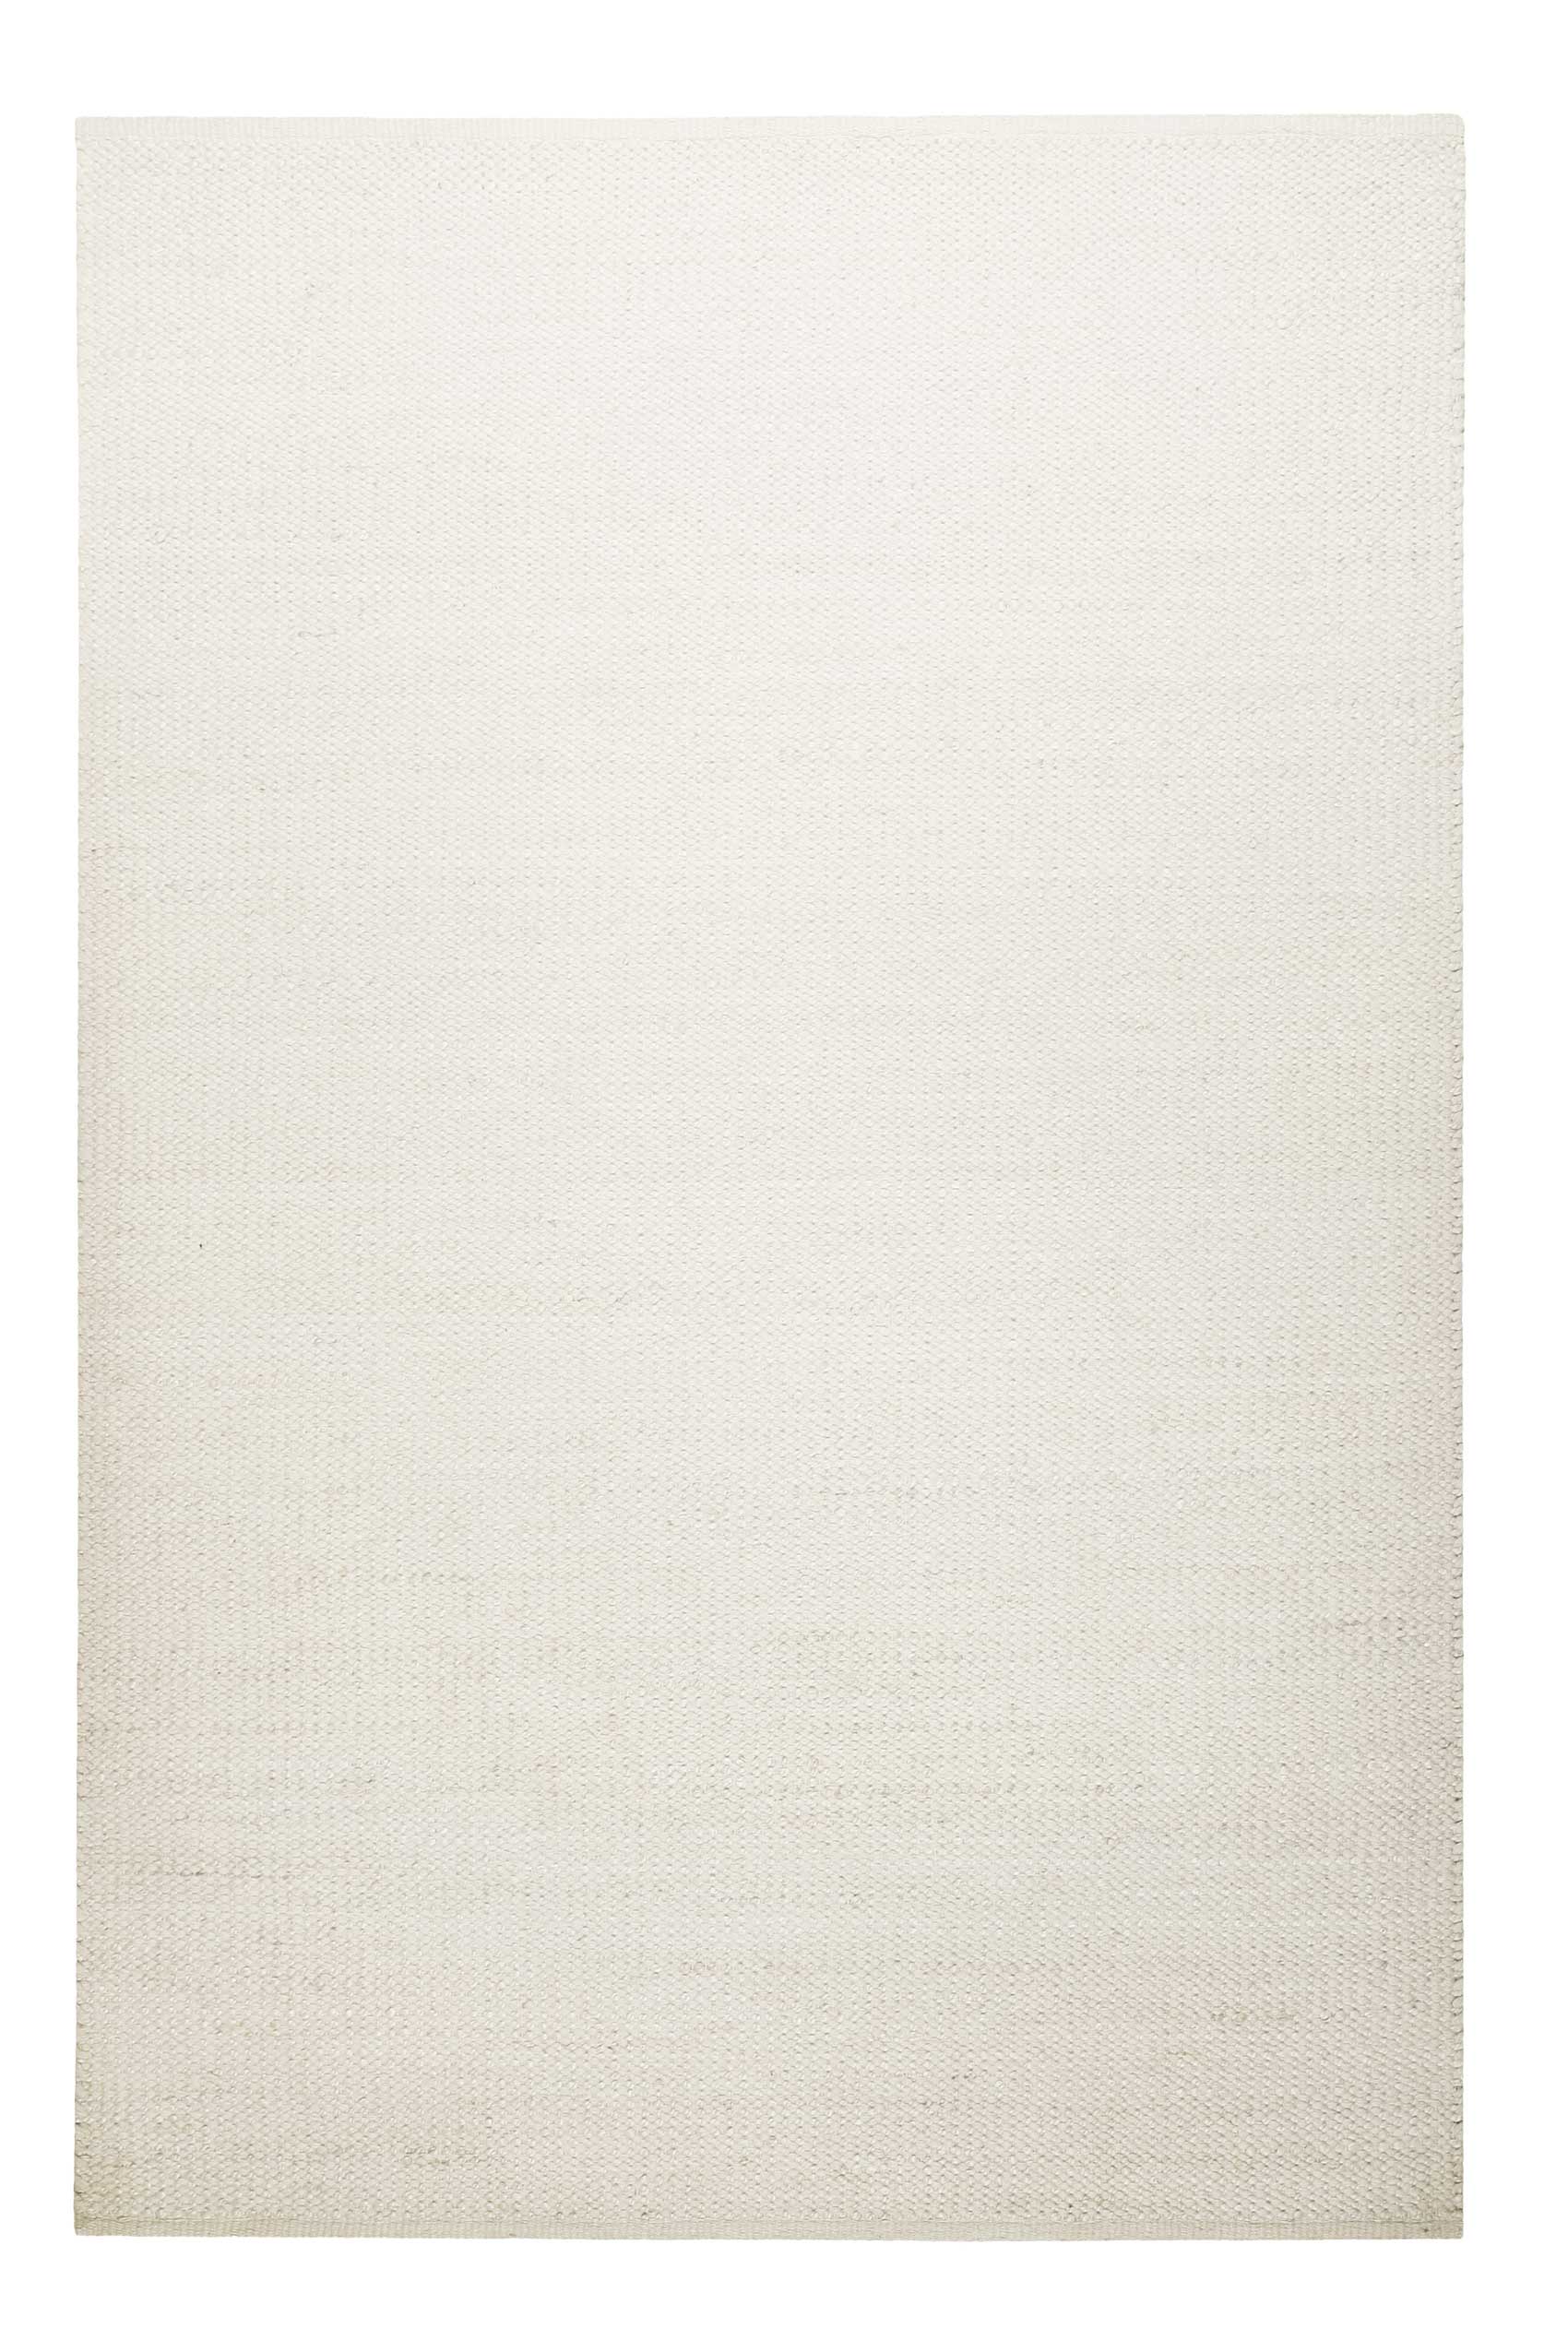 Kelim Teppich Creme Weiß aus Jute & Wolle » Toulouse « Green Looop - Ansicht 1